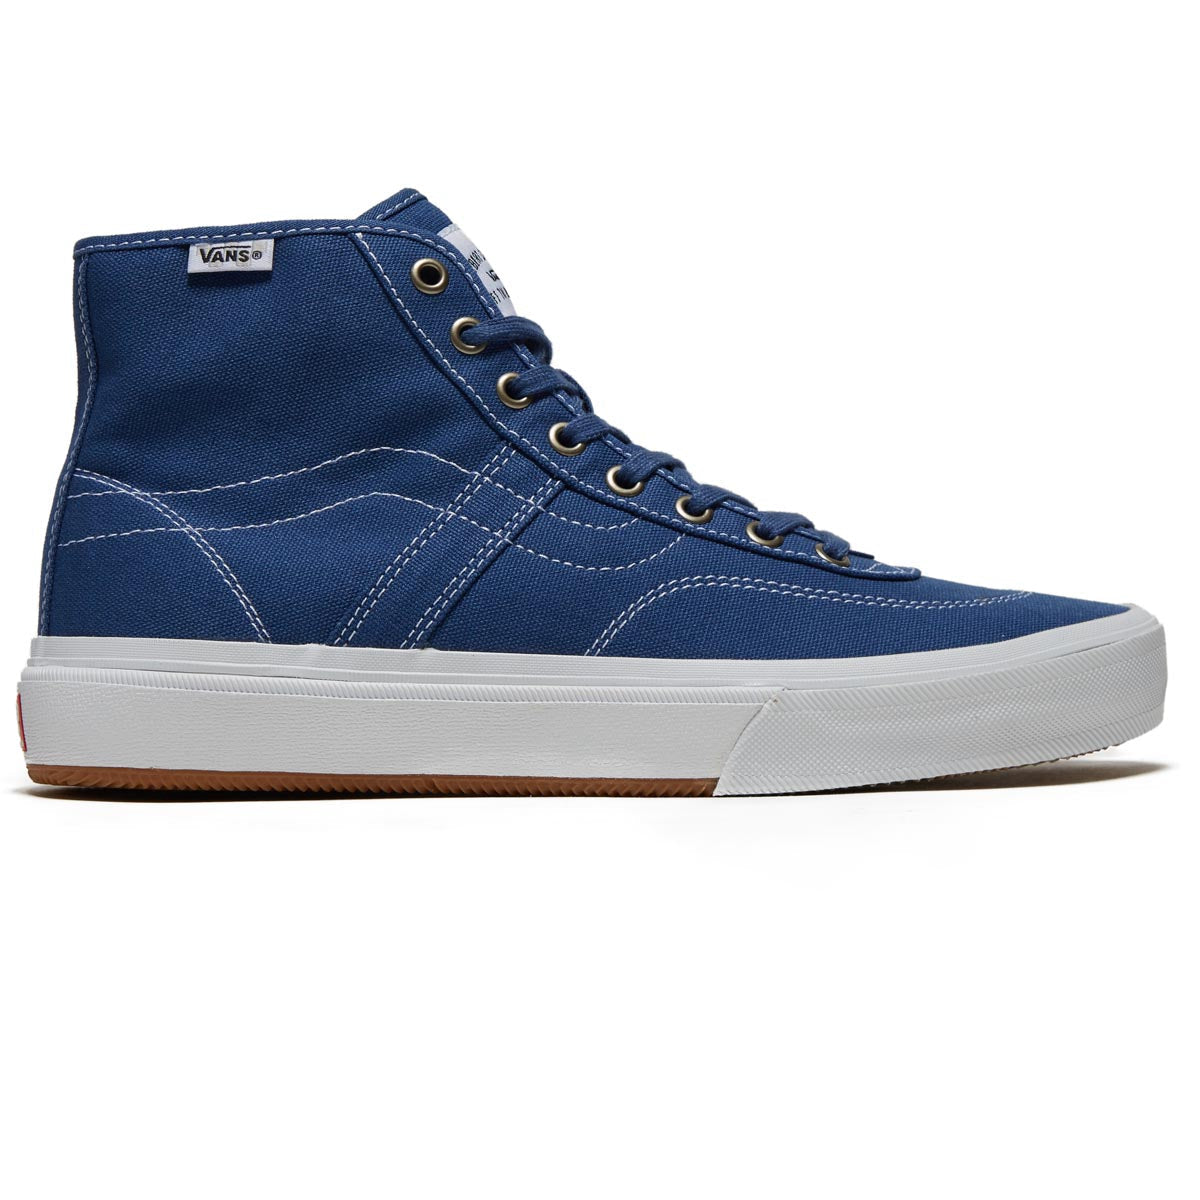 Vans Crockett High Decon Shoes - Canvas Blue/White image 1